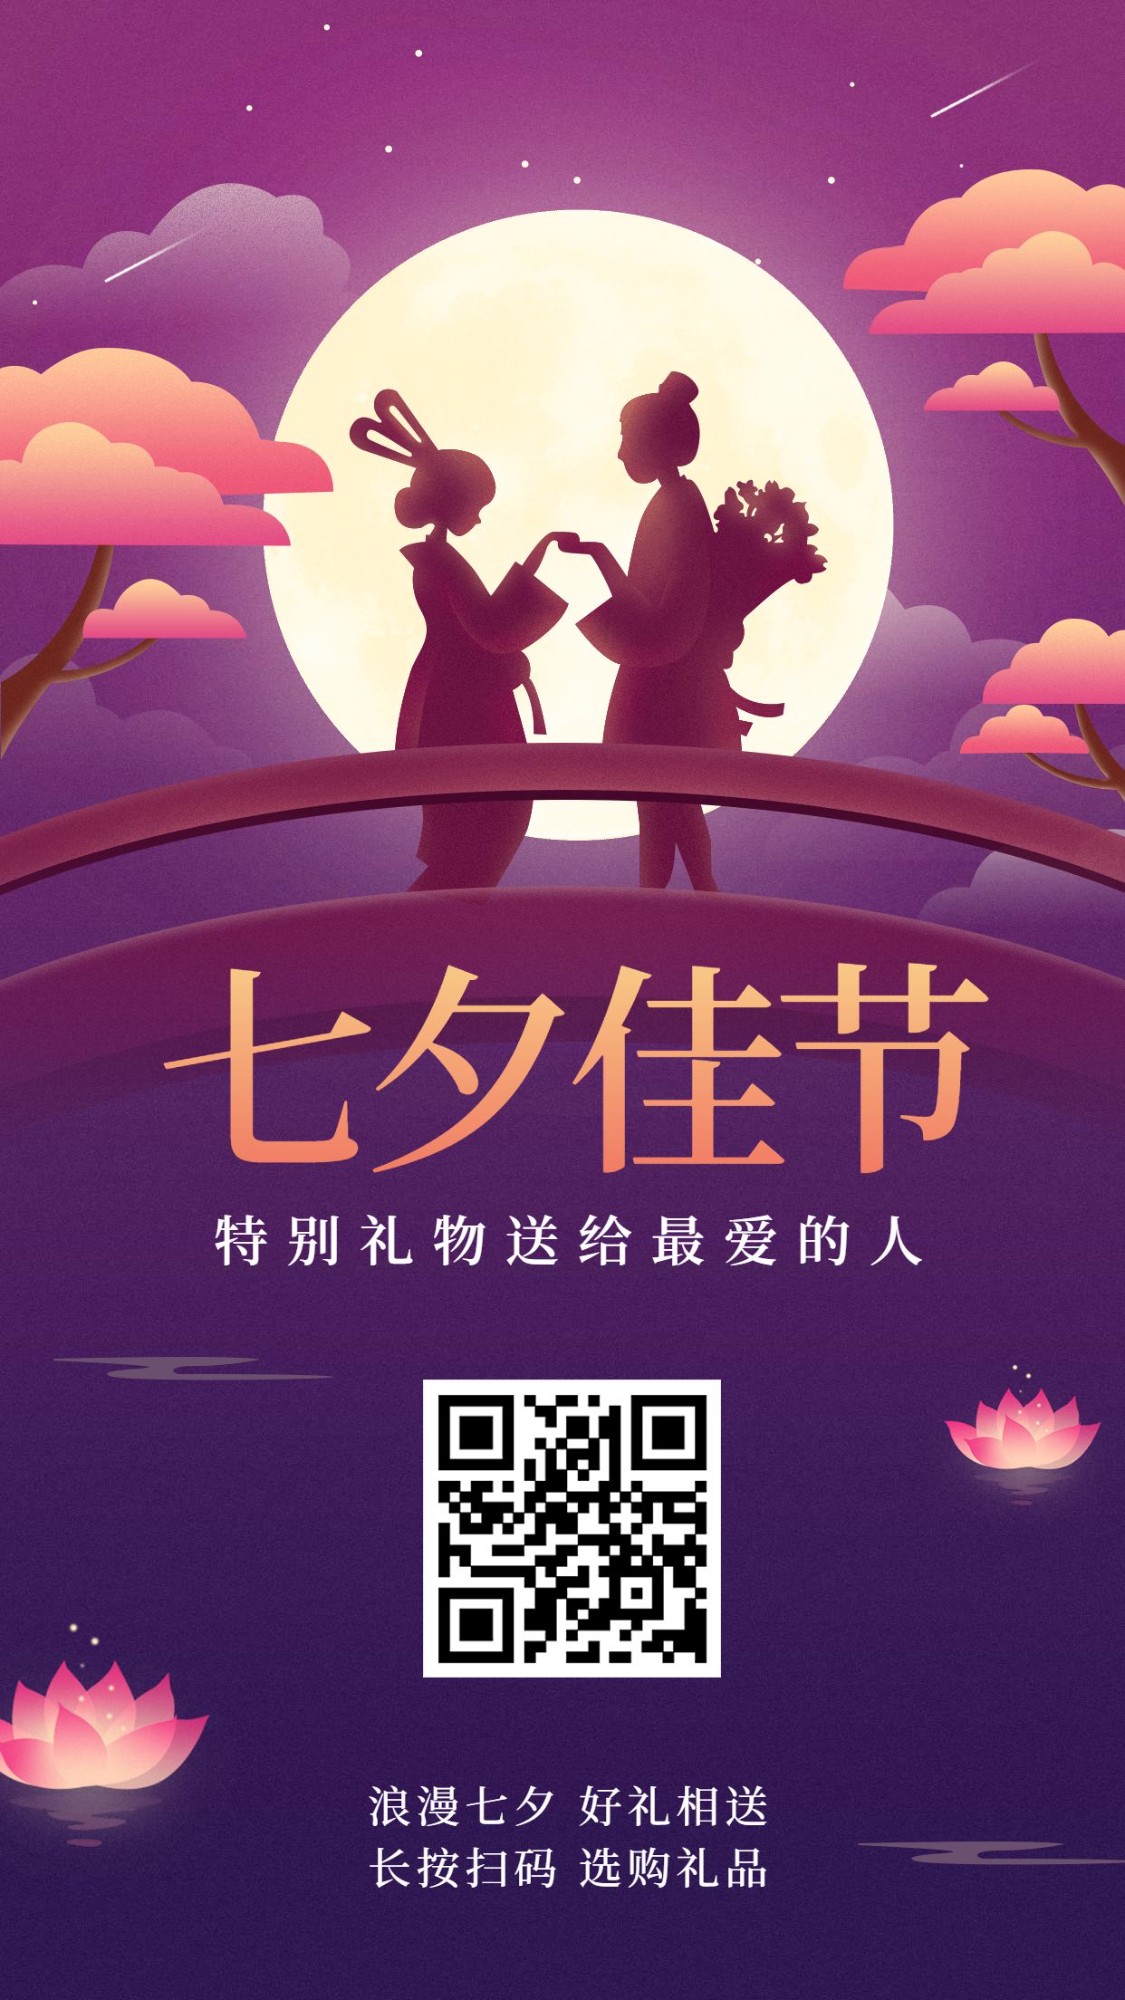 七夕情人节/花店活动促销/牛郎织女手绘手机海报